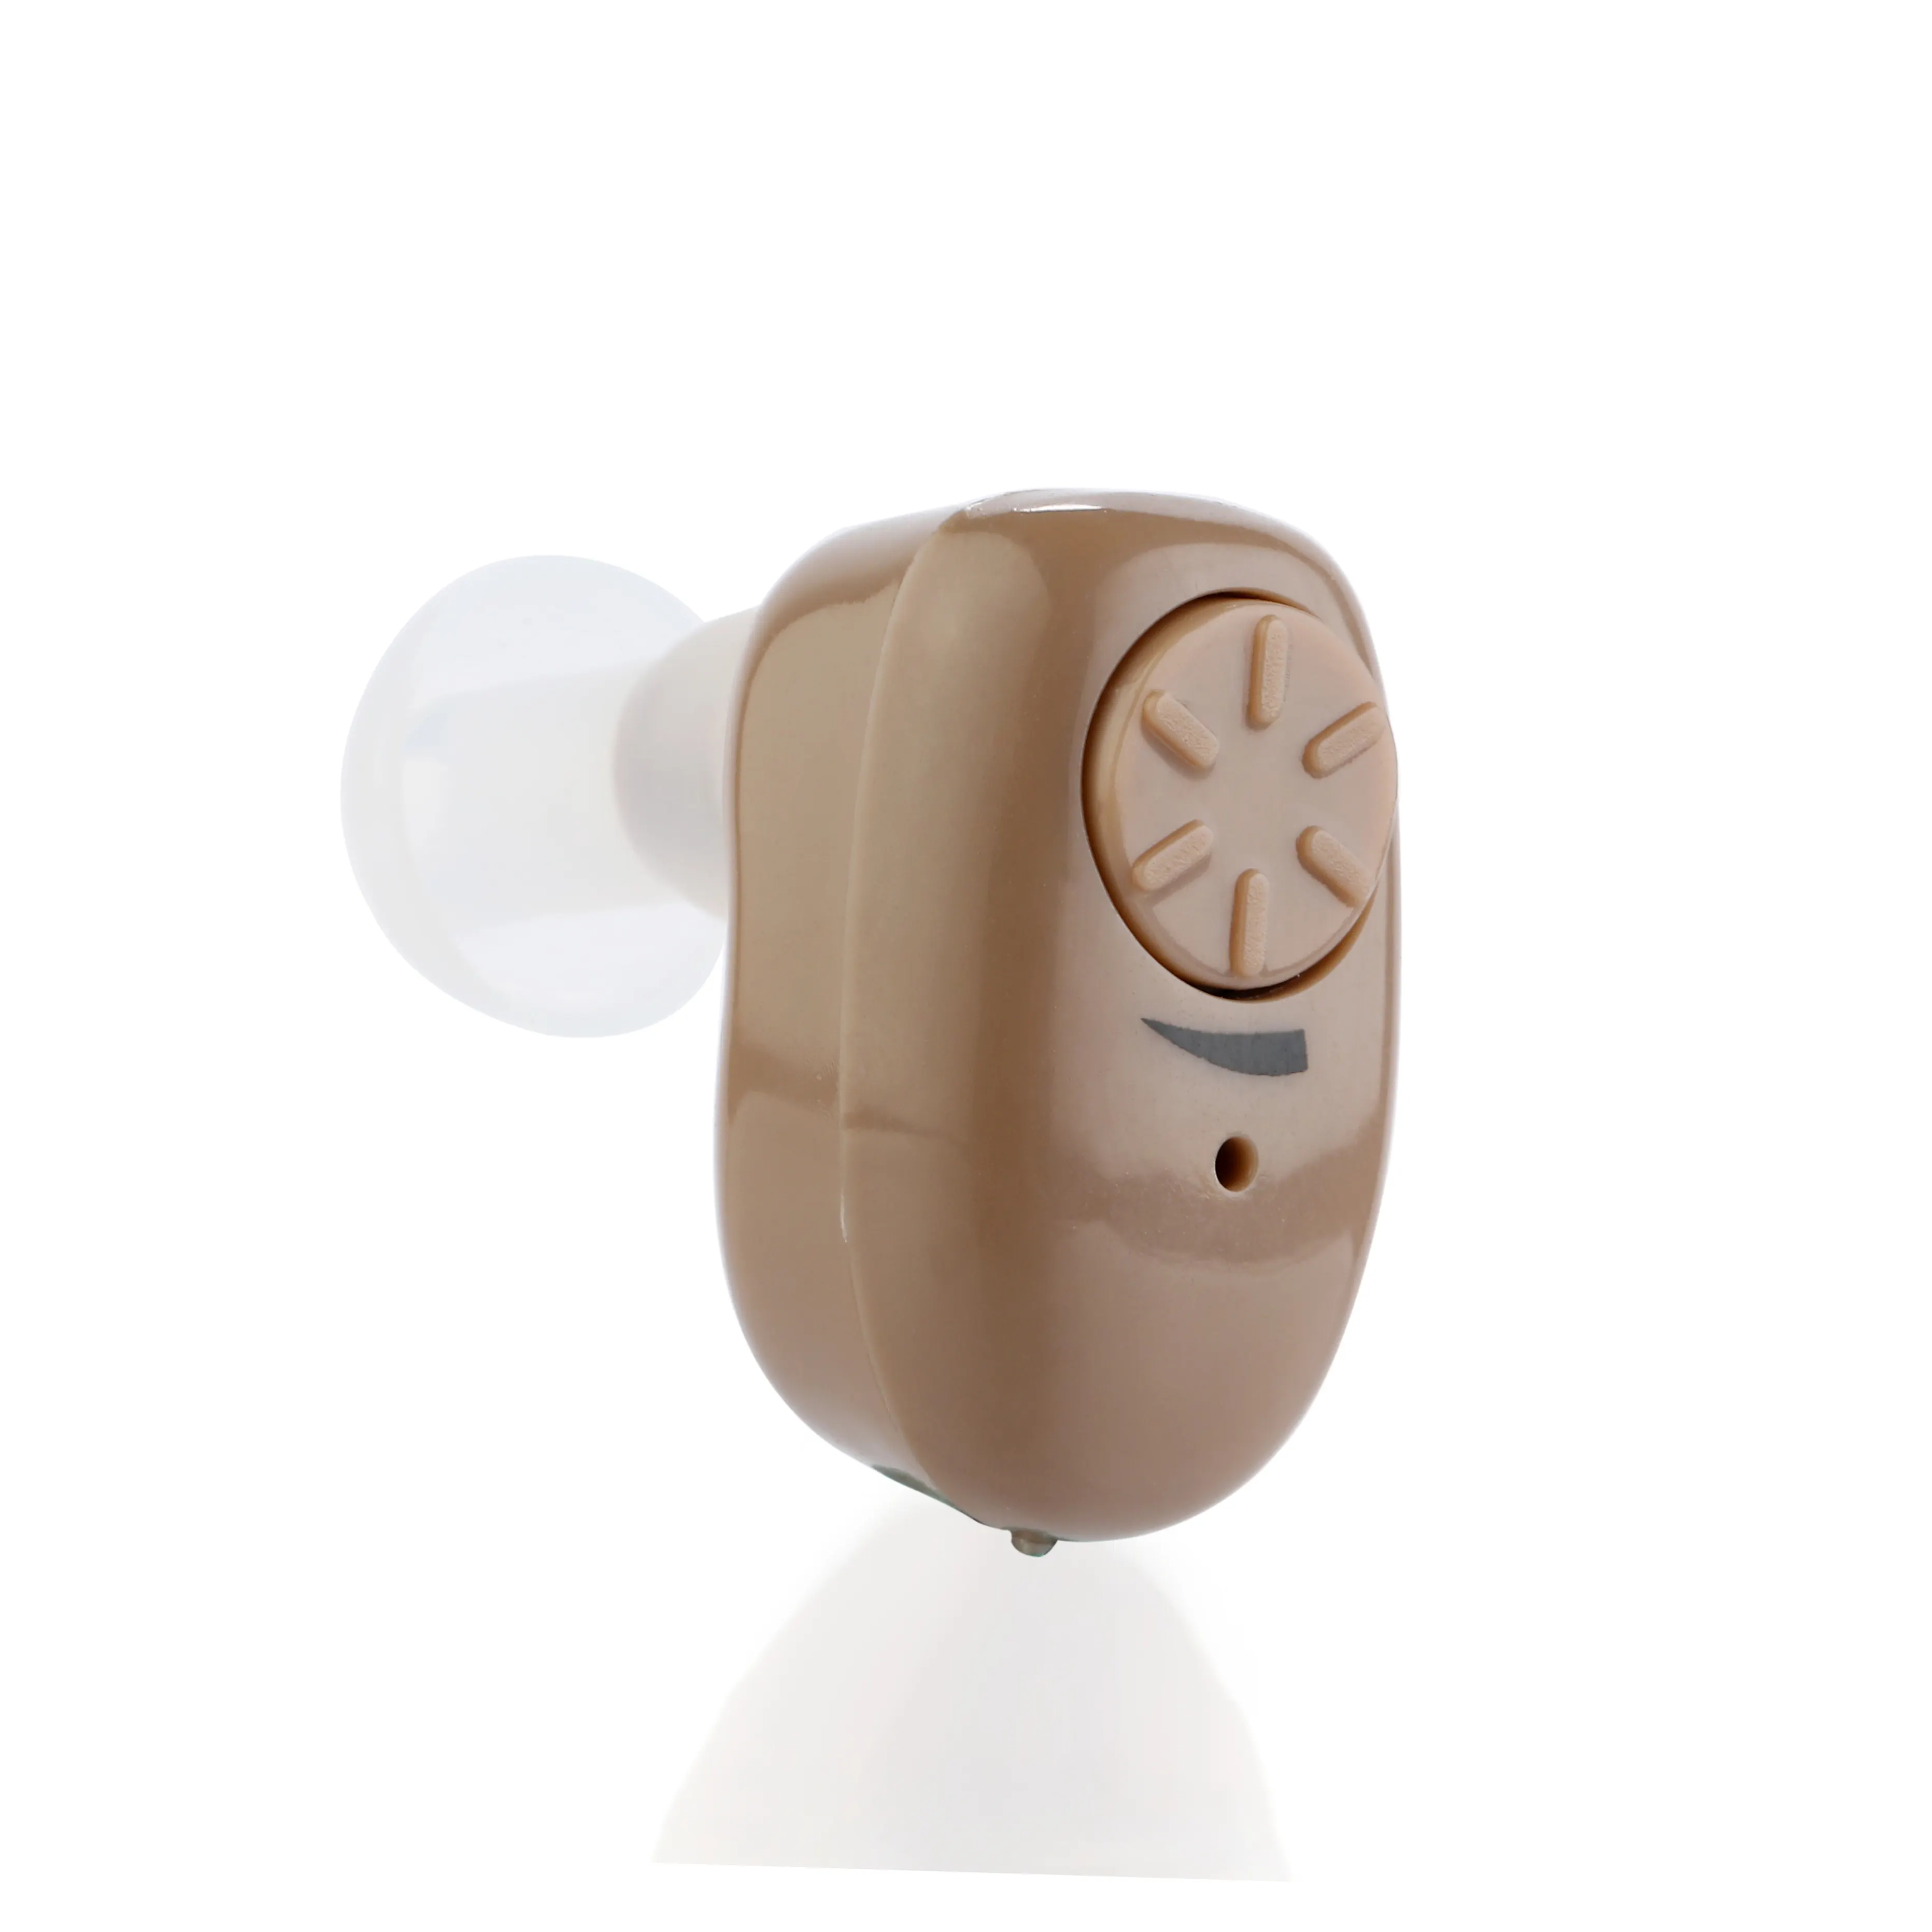 Europea mejor venta conveniente gancho de oreja audífonos ruido prueba audífonos costo-efectiva audiencia amplificador